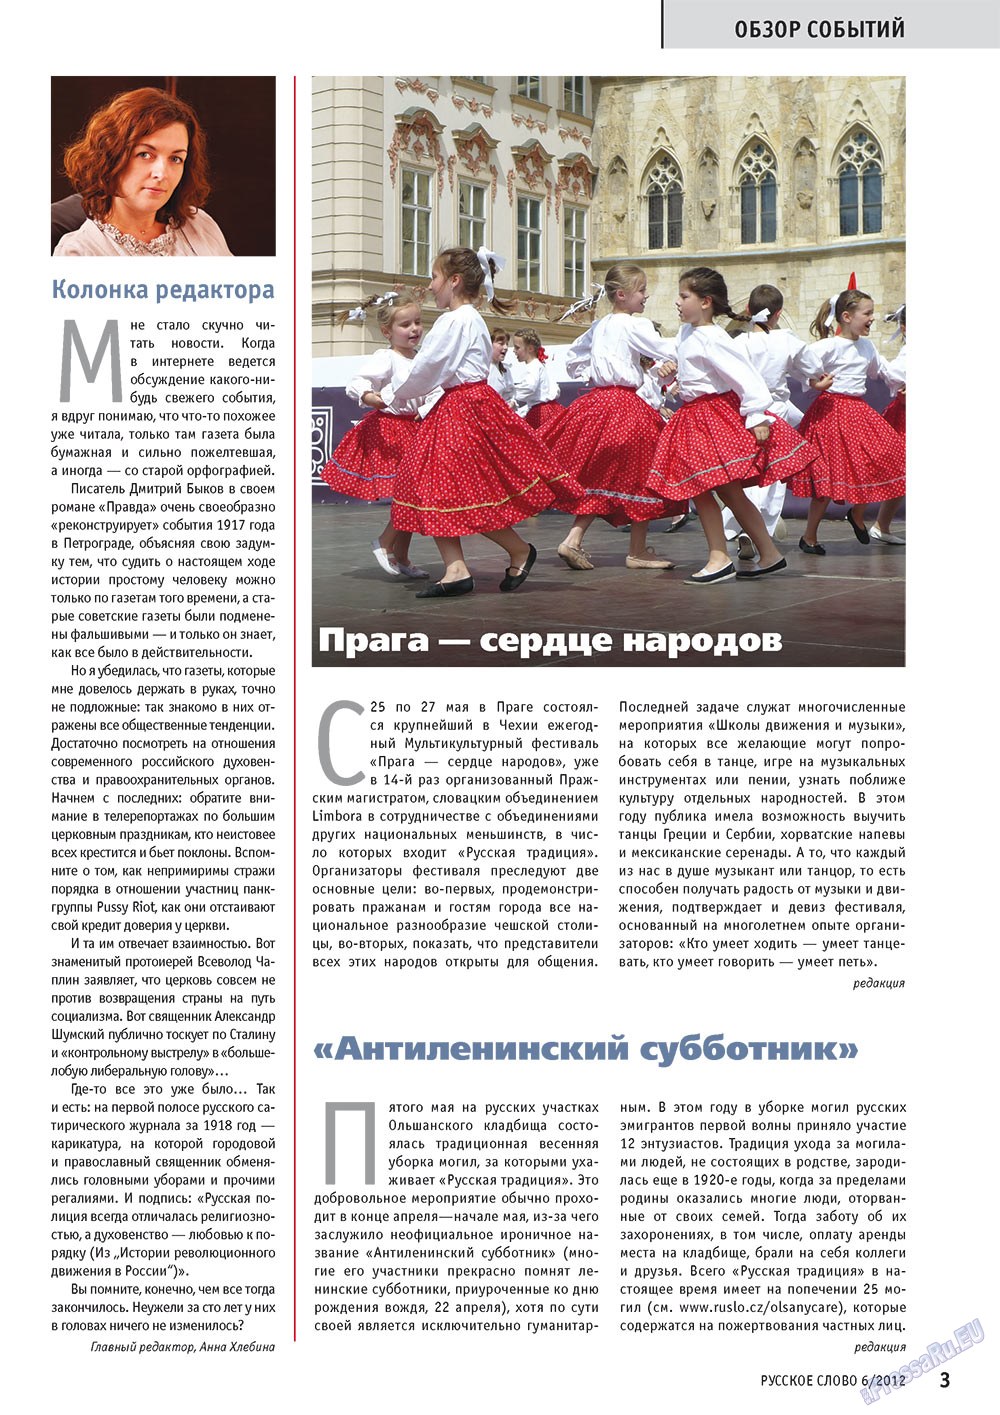 Русское слово, журнал. 2012 №6 стр.3